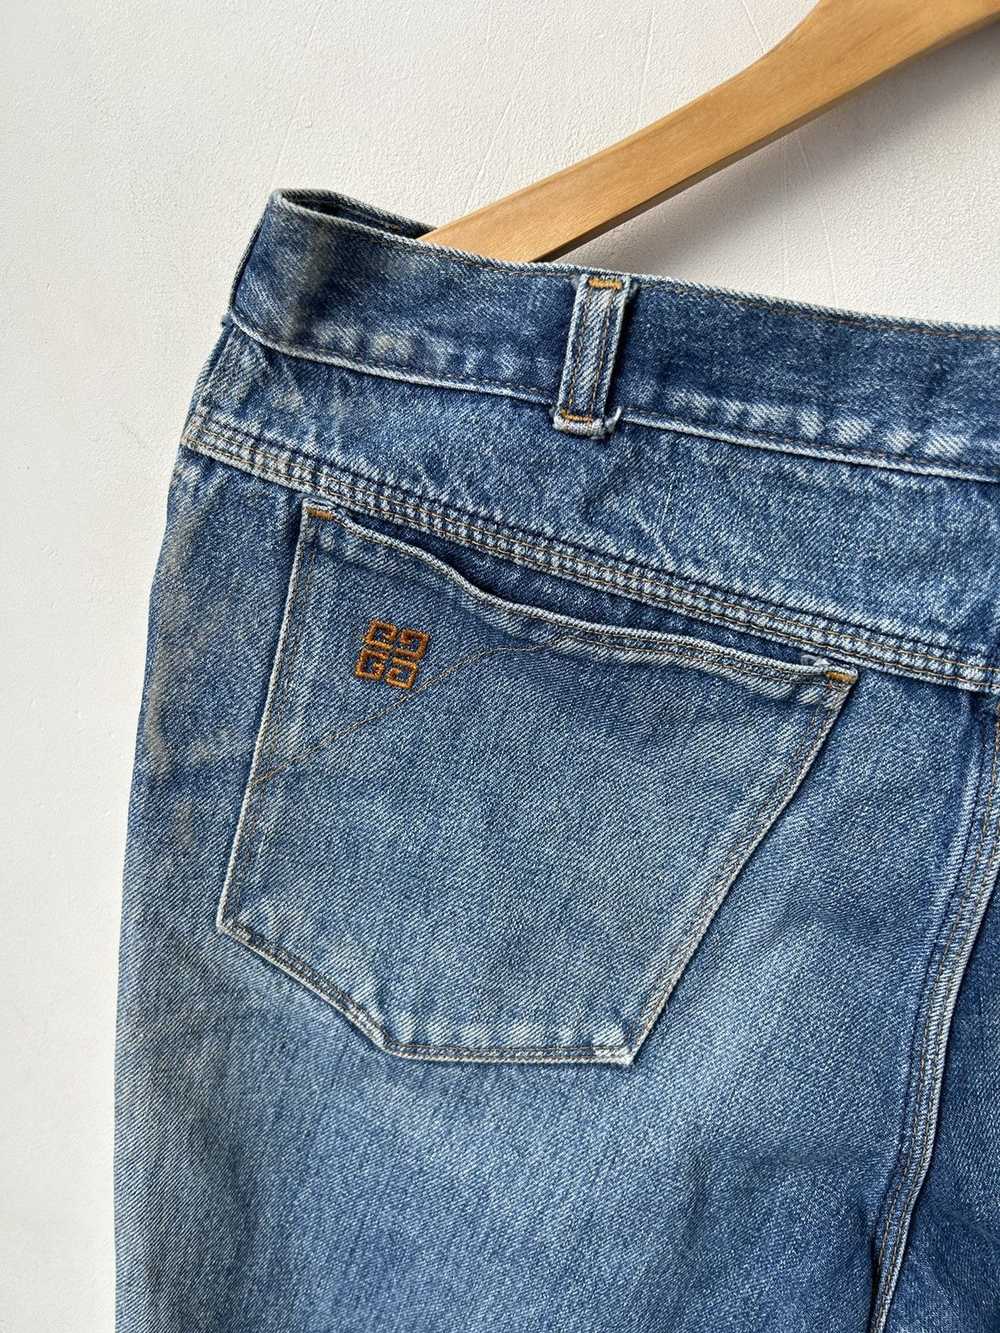 Givenchy × Streetwear × Vintage Vintage jeans - image 3